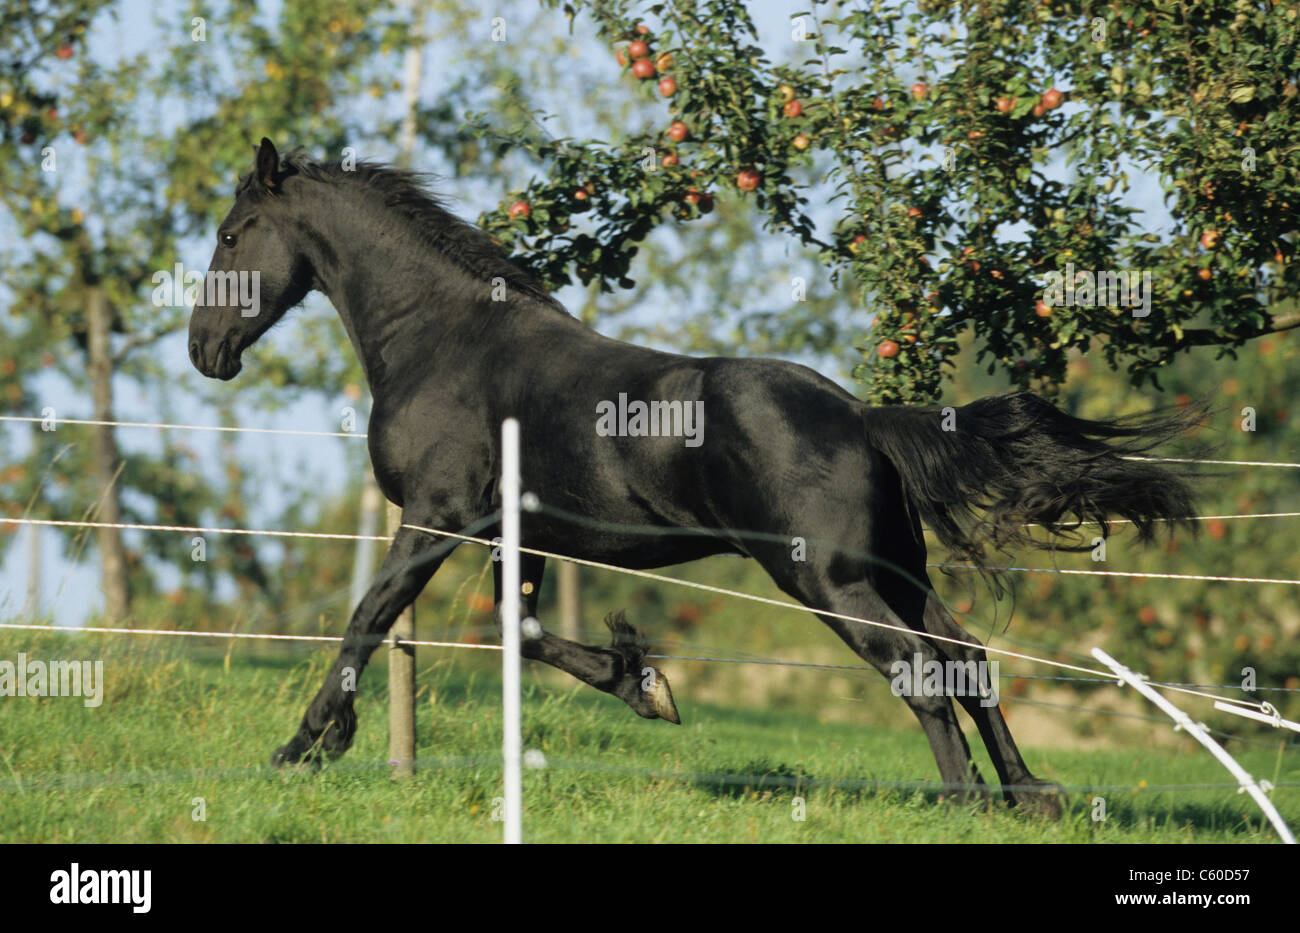 Friesian caballo (Equus ferus caballus) rompiendo una valla eléctrica. Foto de stock